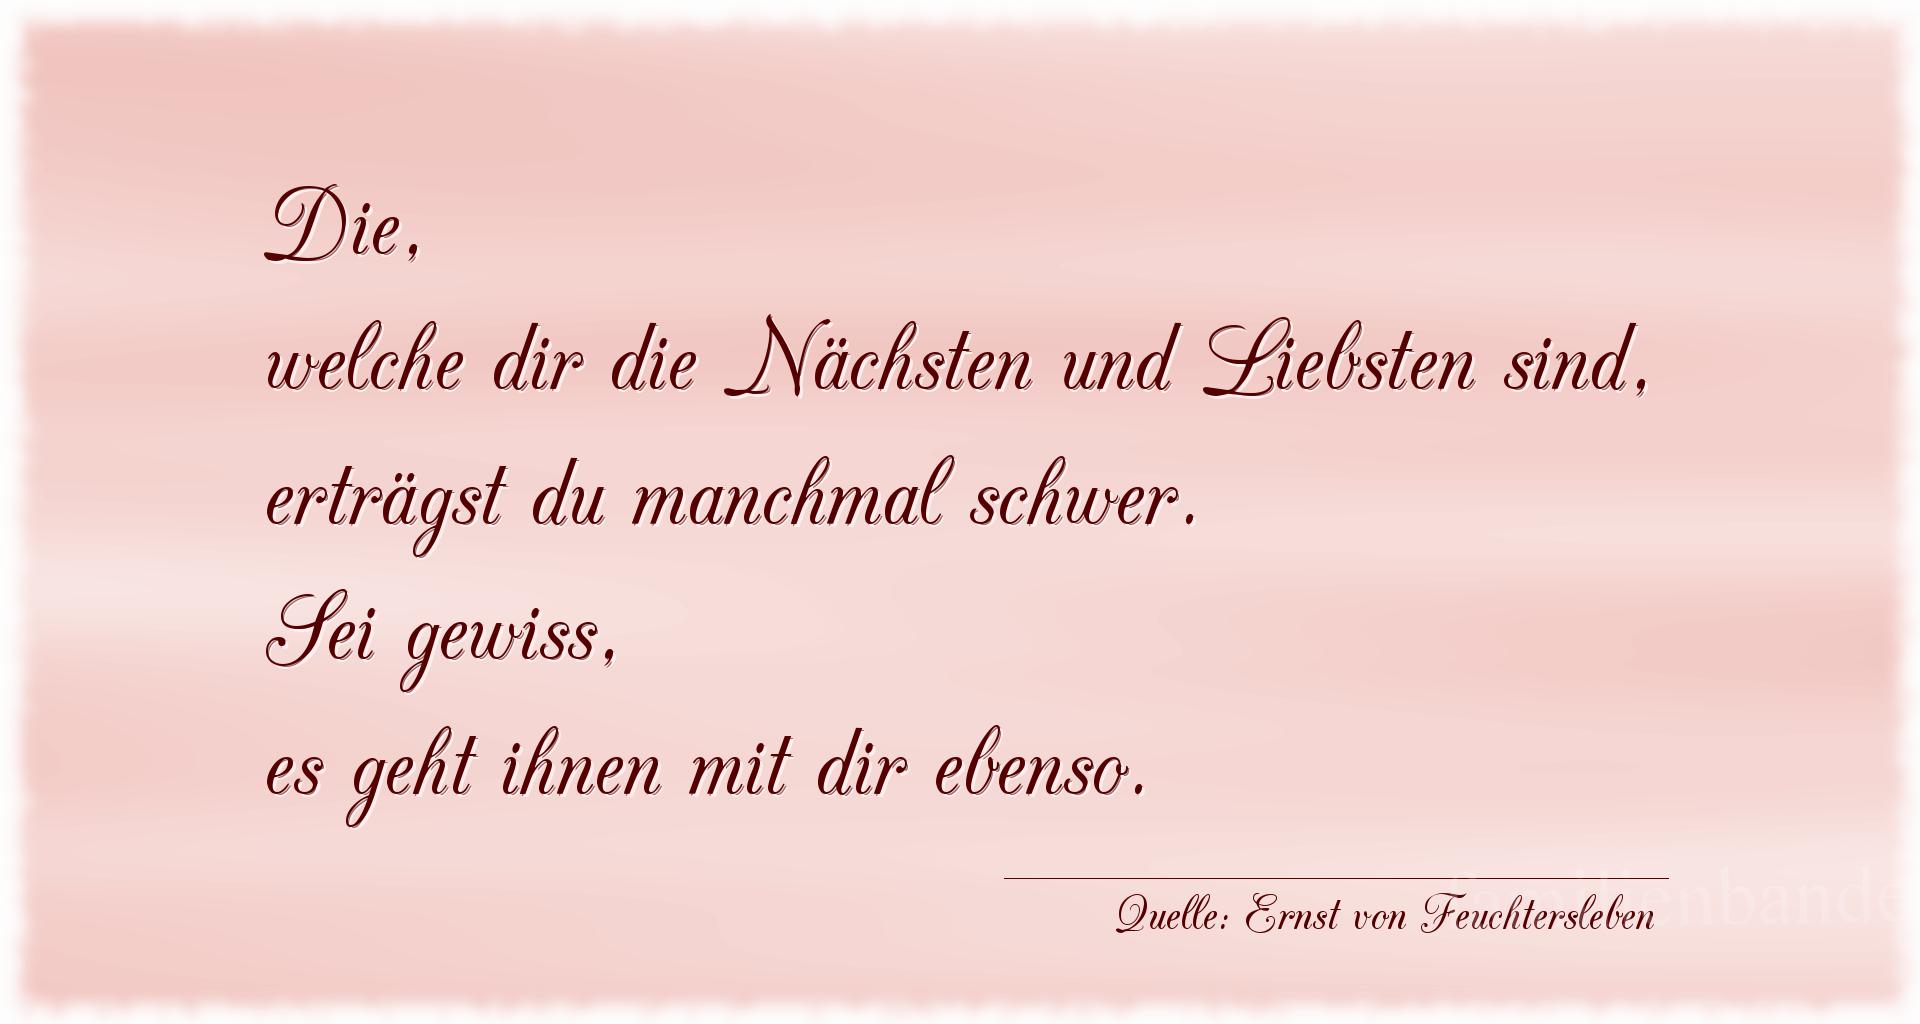 Familienspruch Nr. 362, Quelle Ernst von Feuchtersleben